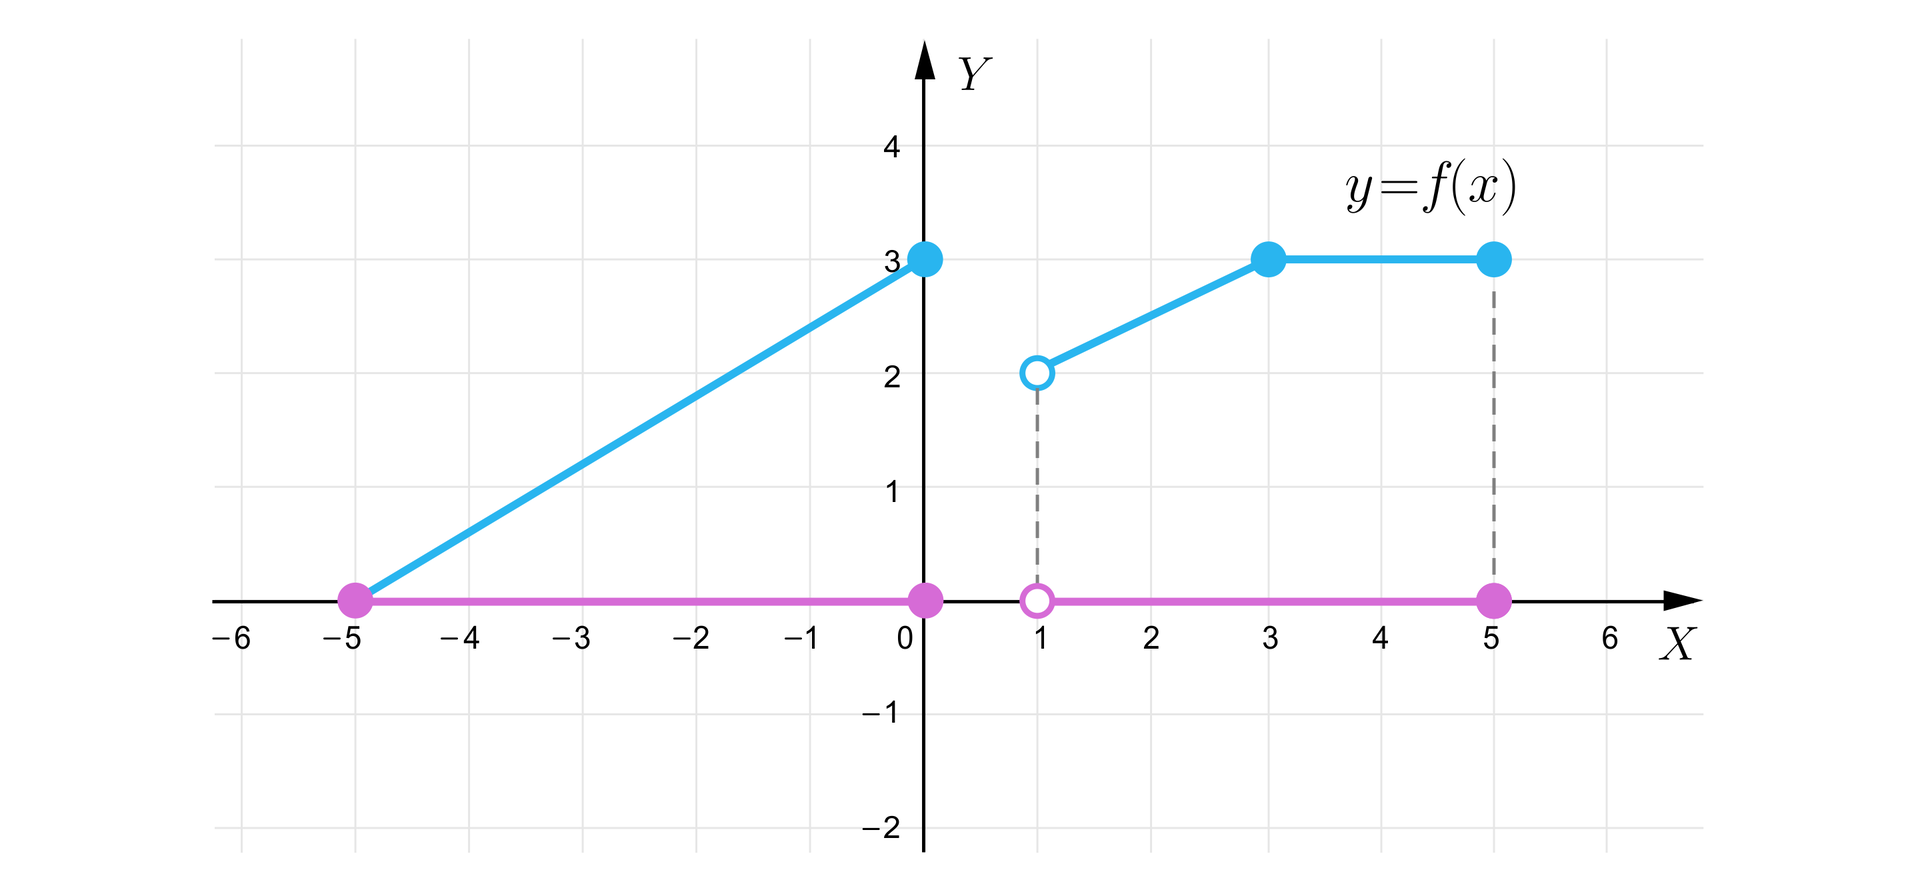 Ilustracja przedstawia wykres funkcji opisany wyżej z tą różnicą, że tutaj zaznaczono rzut dziedziny na osi X. Rzut ten biegnie od  minus pięciu (punkt zamalowany) do zera (punkt zamalowany) i od jeden (punkt niezamalowany) do pięciu (punkt zamalowany), czyli składa się z dwóch odcinków, przy czym drugi wymieniony jest lewostronnie otwarty.